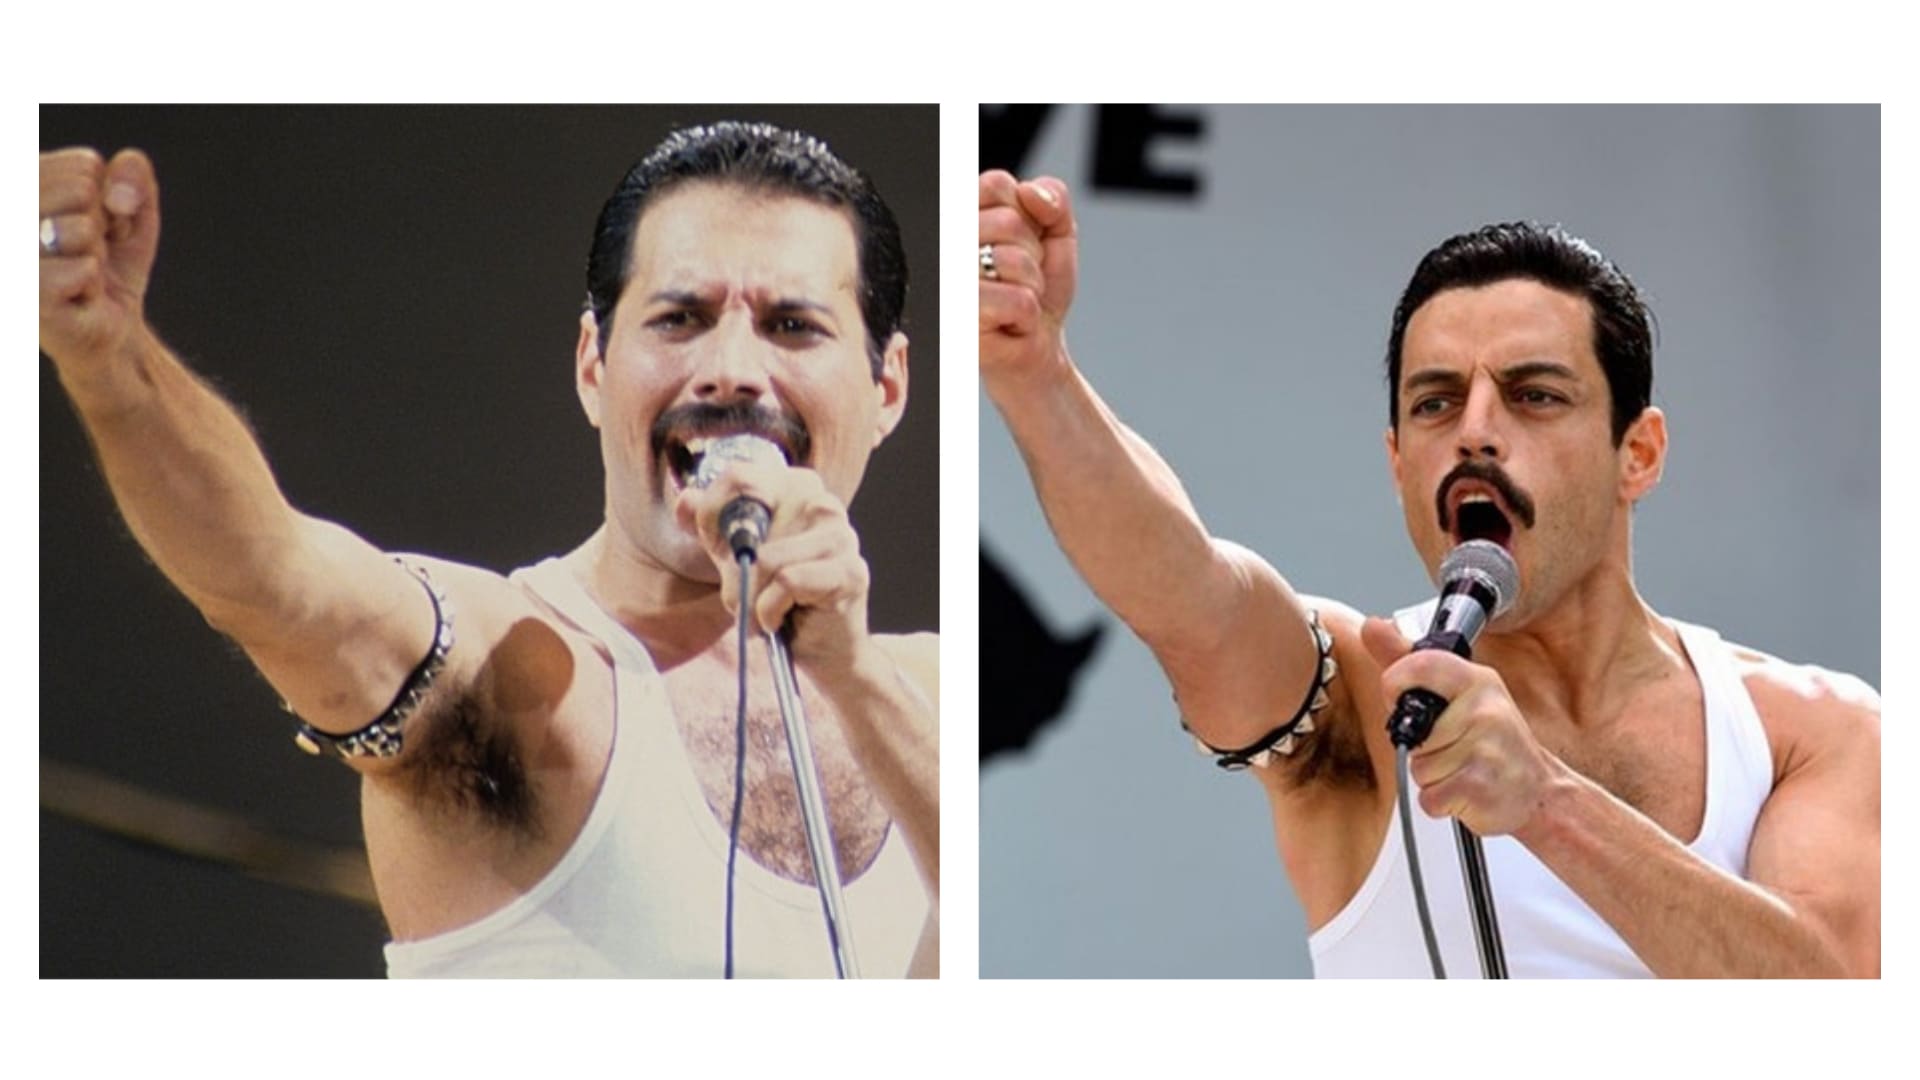 Srovnání skutečných záběrů Live Aid a filmové verze ze snímku Bohemian Rhapsody